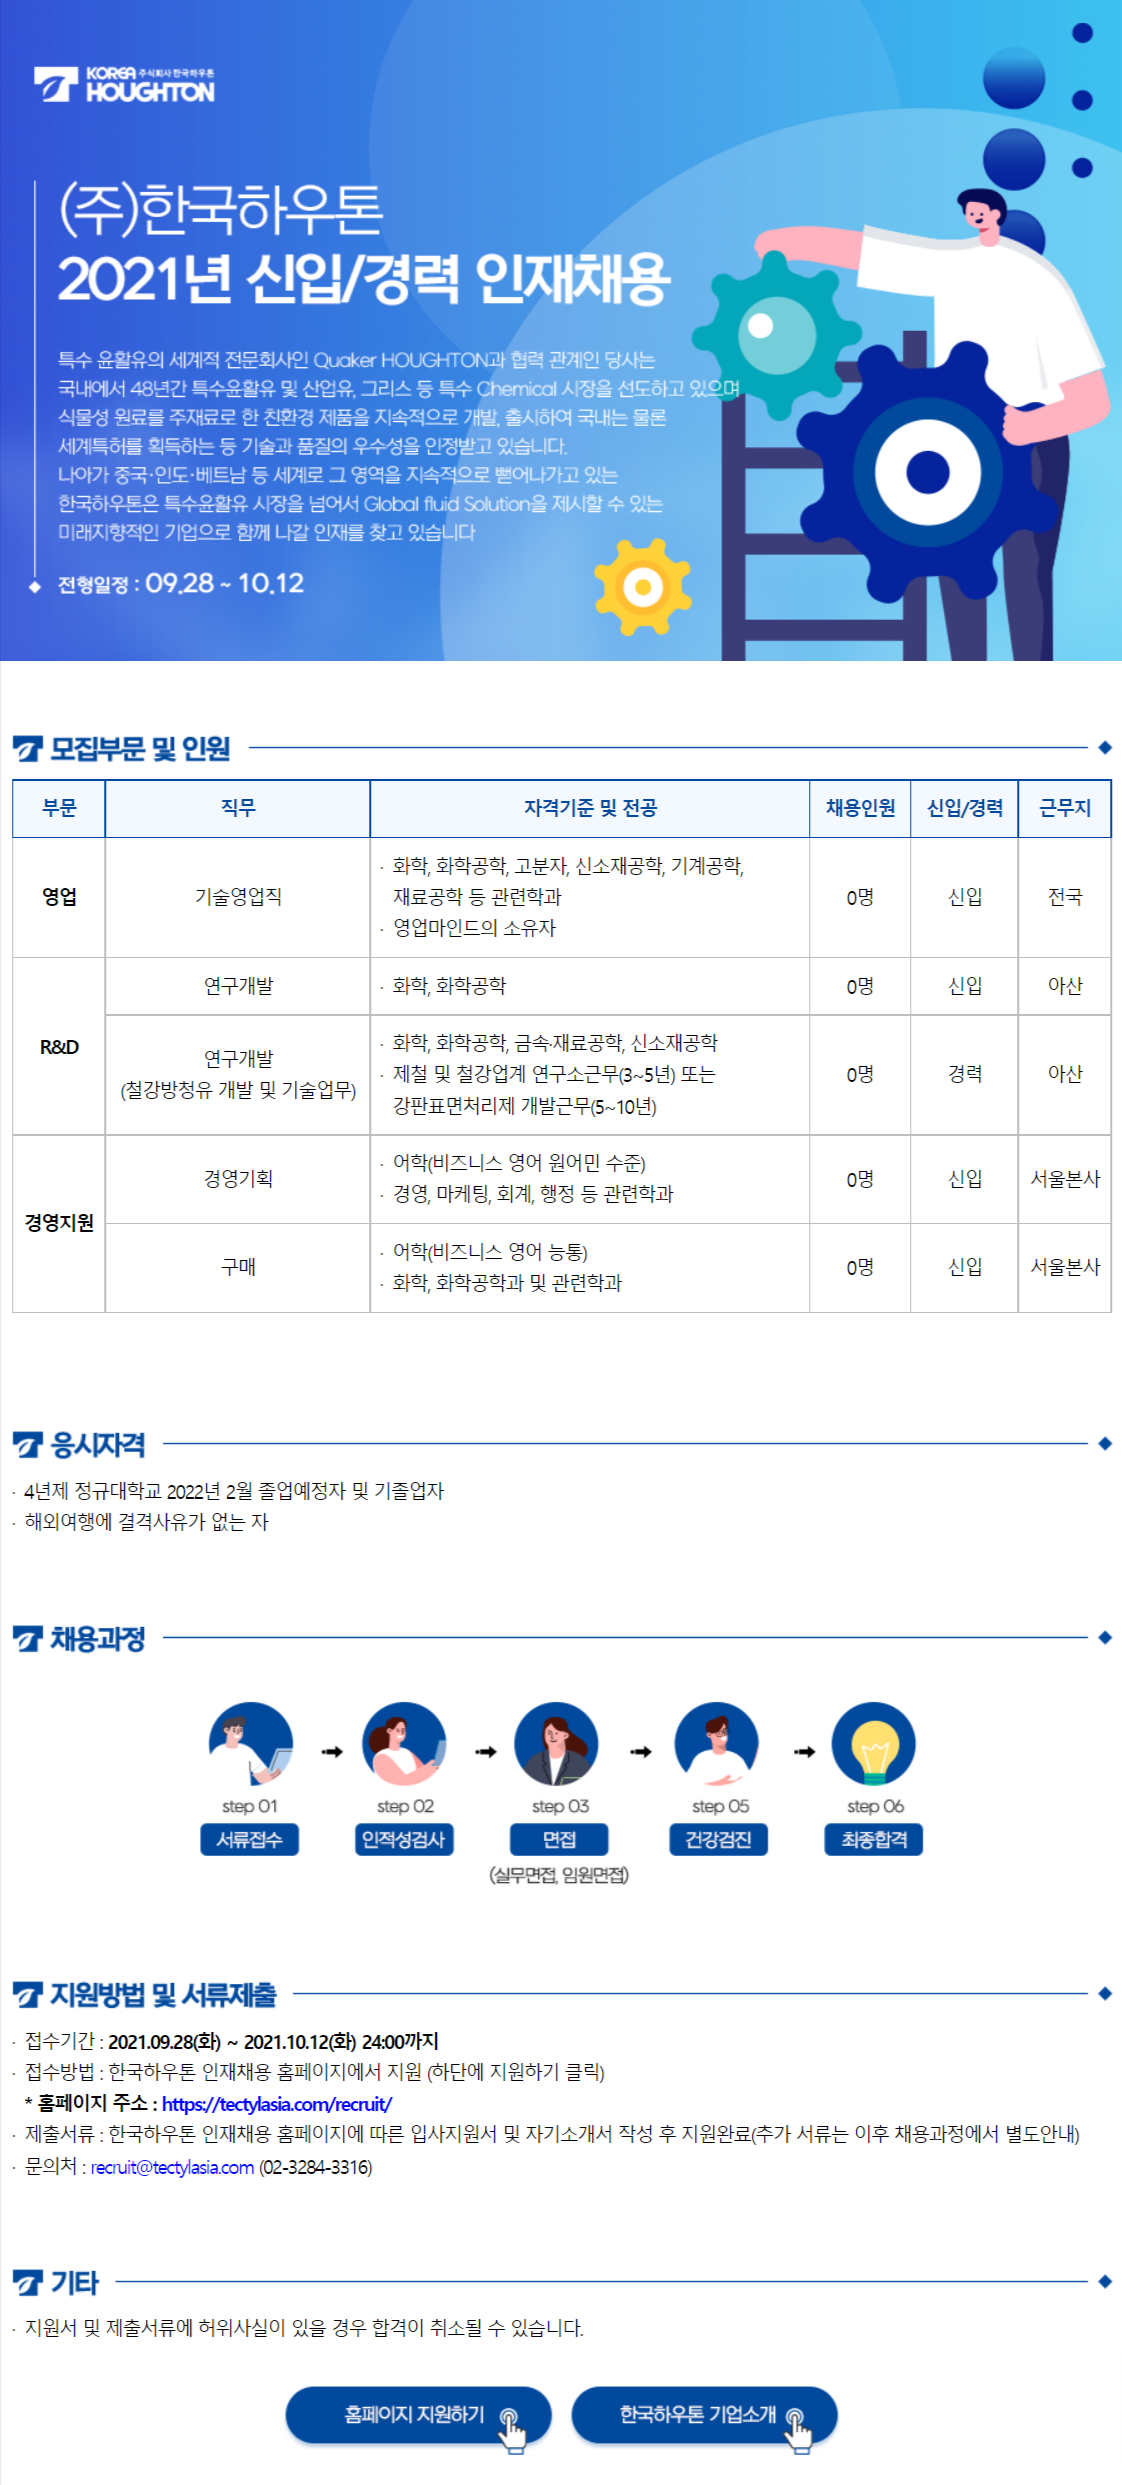 [한국하우톤] 2021년 신입/경력 인재채용(경영)